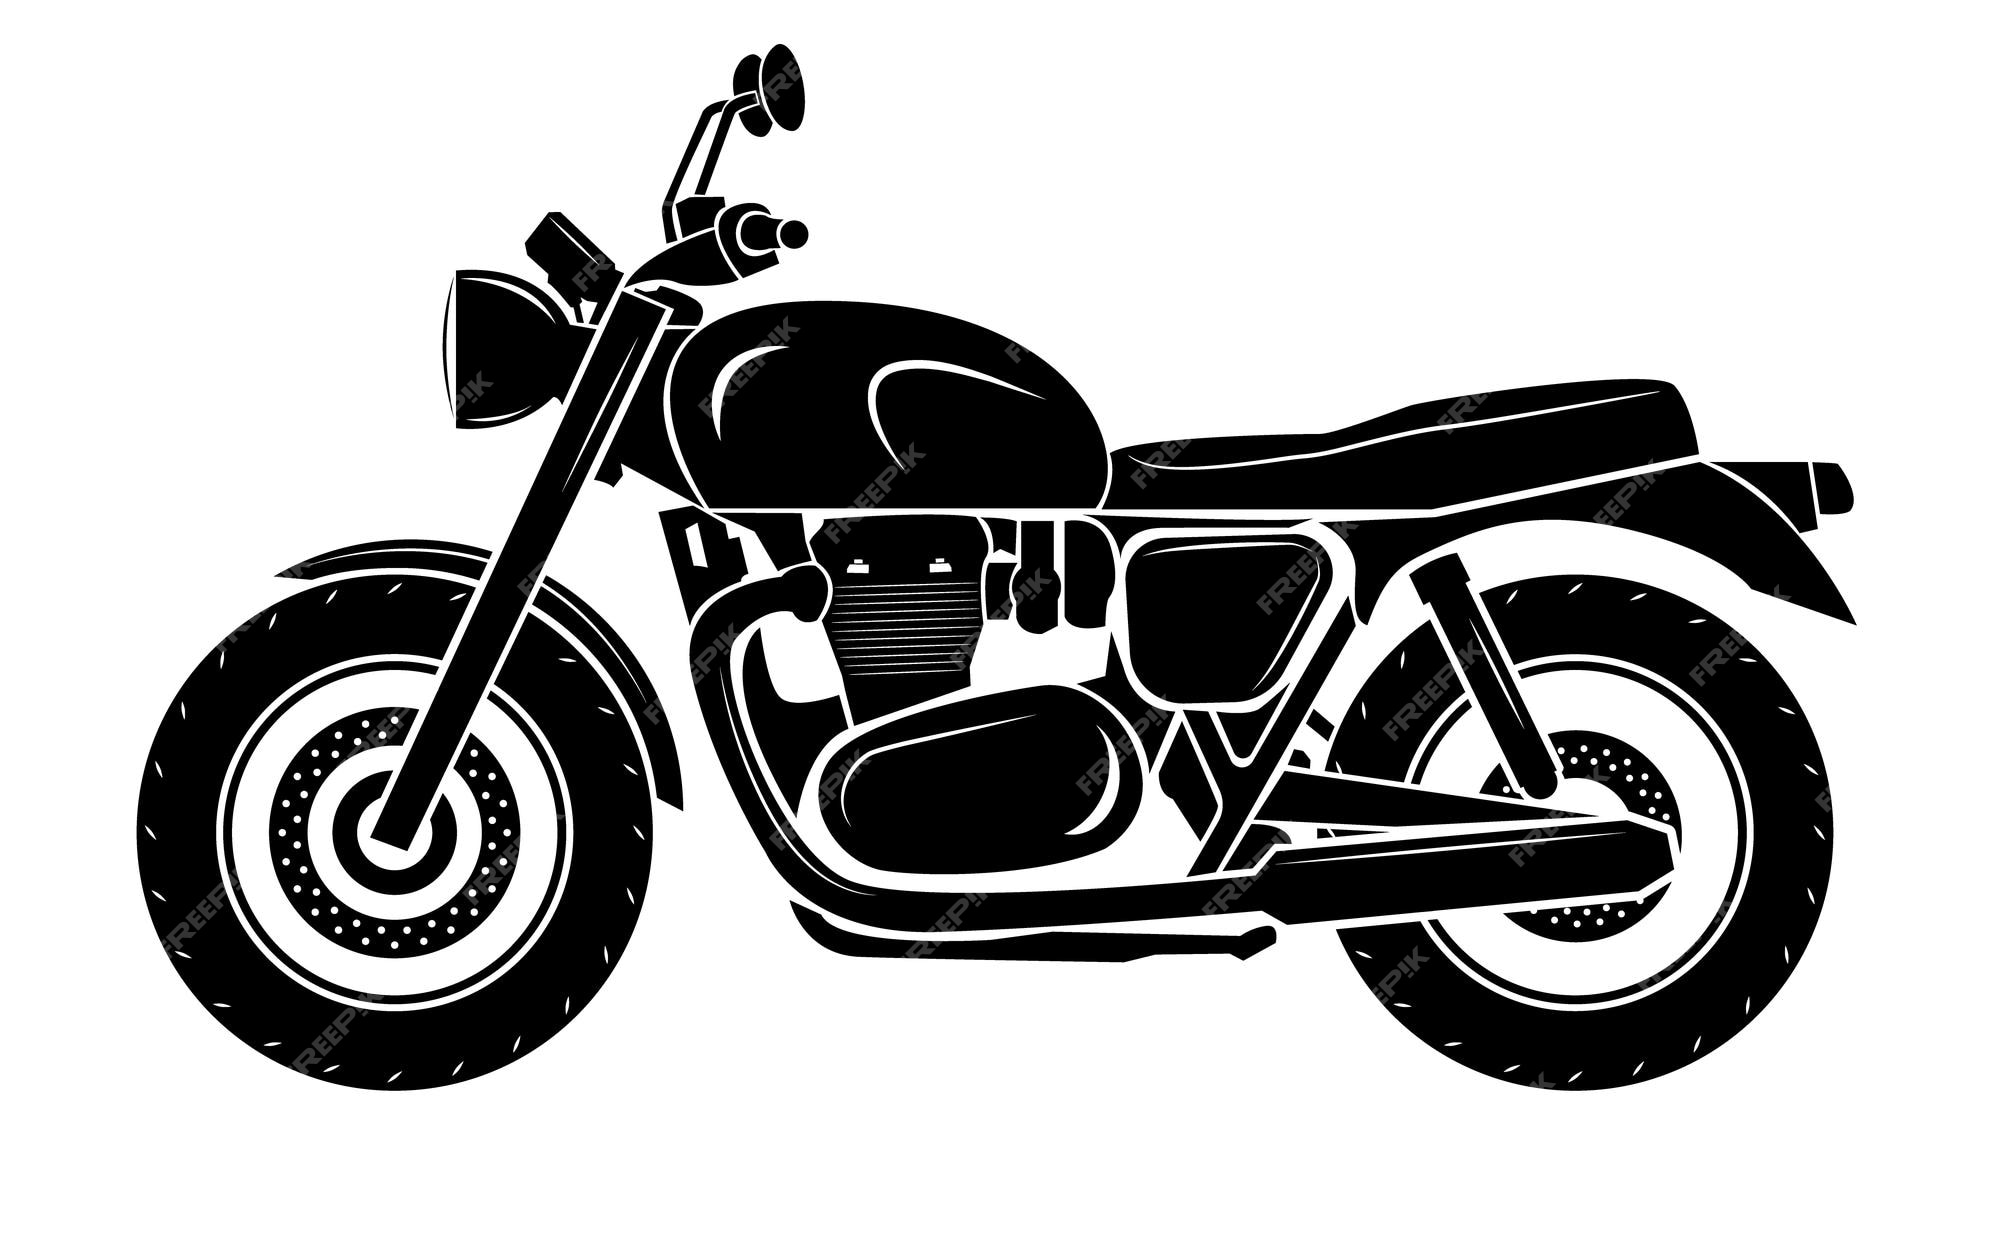 Desenho Ilustrativo Do Vetor Desportivo, a Preto E Branco, Da Chama Das  Motocicletas Ilustração do Vetor - Ilustração de perigo, moto: 213644420